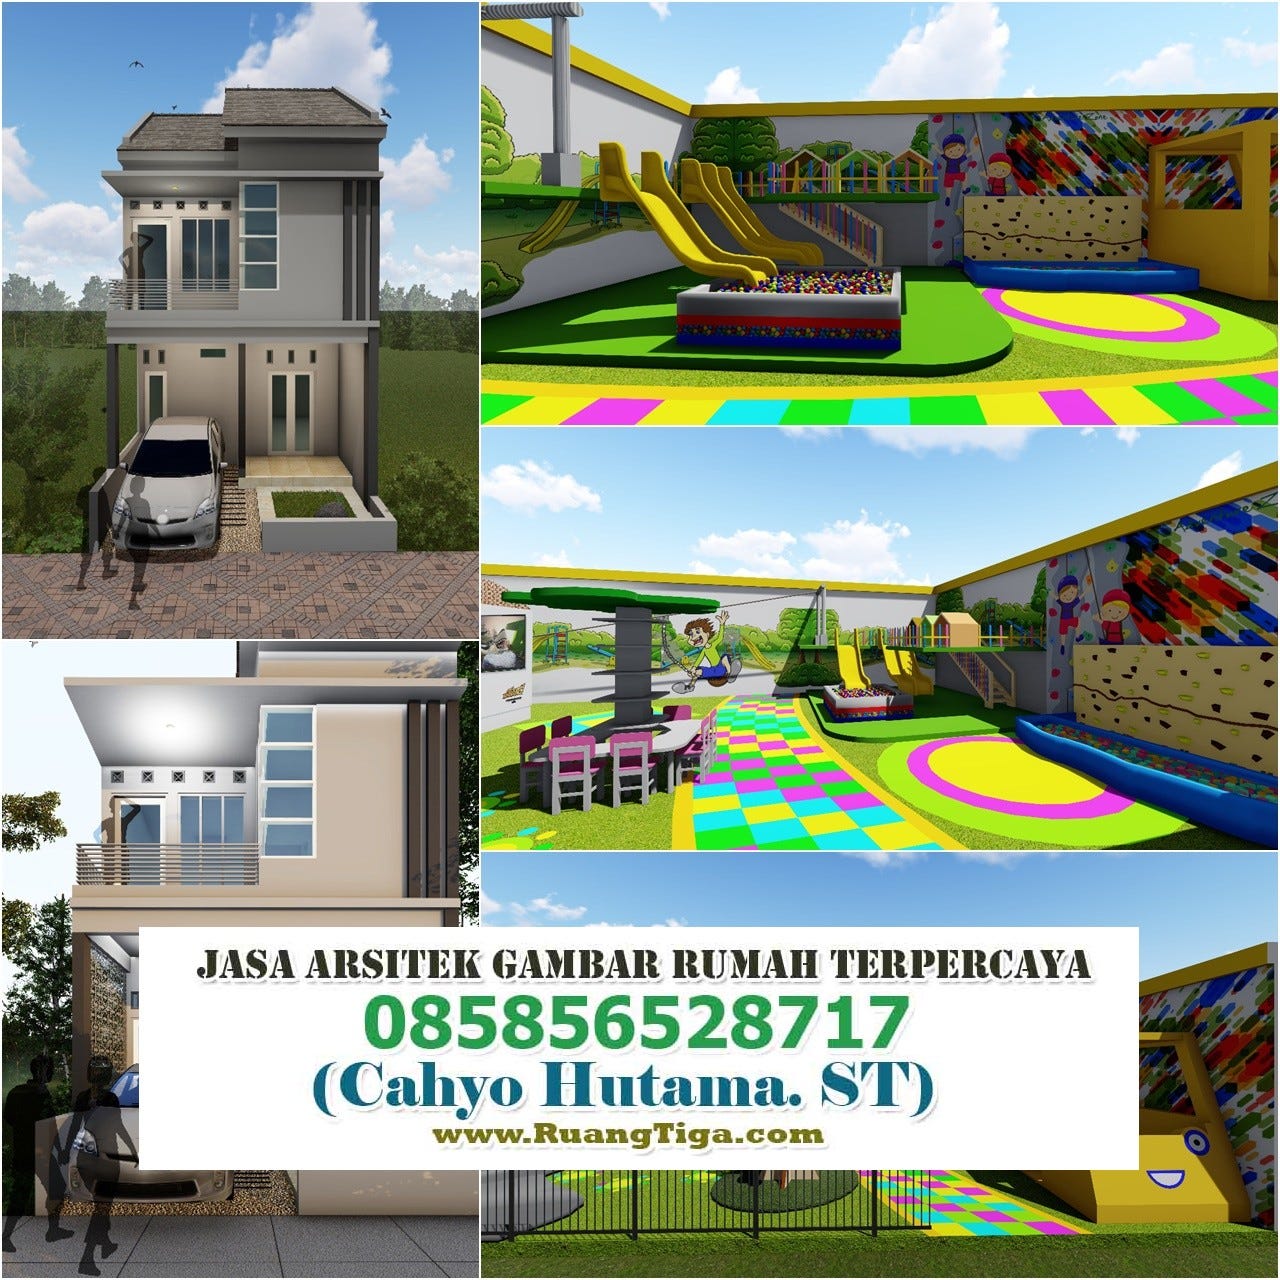 085856528717 Jasa Desain Rumah Minimalis Di Solo Jasa Desain